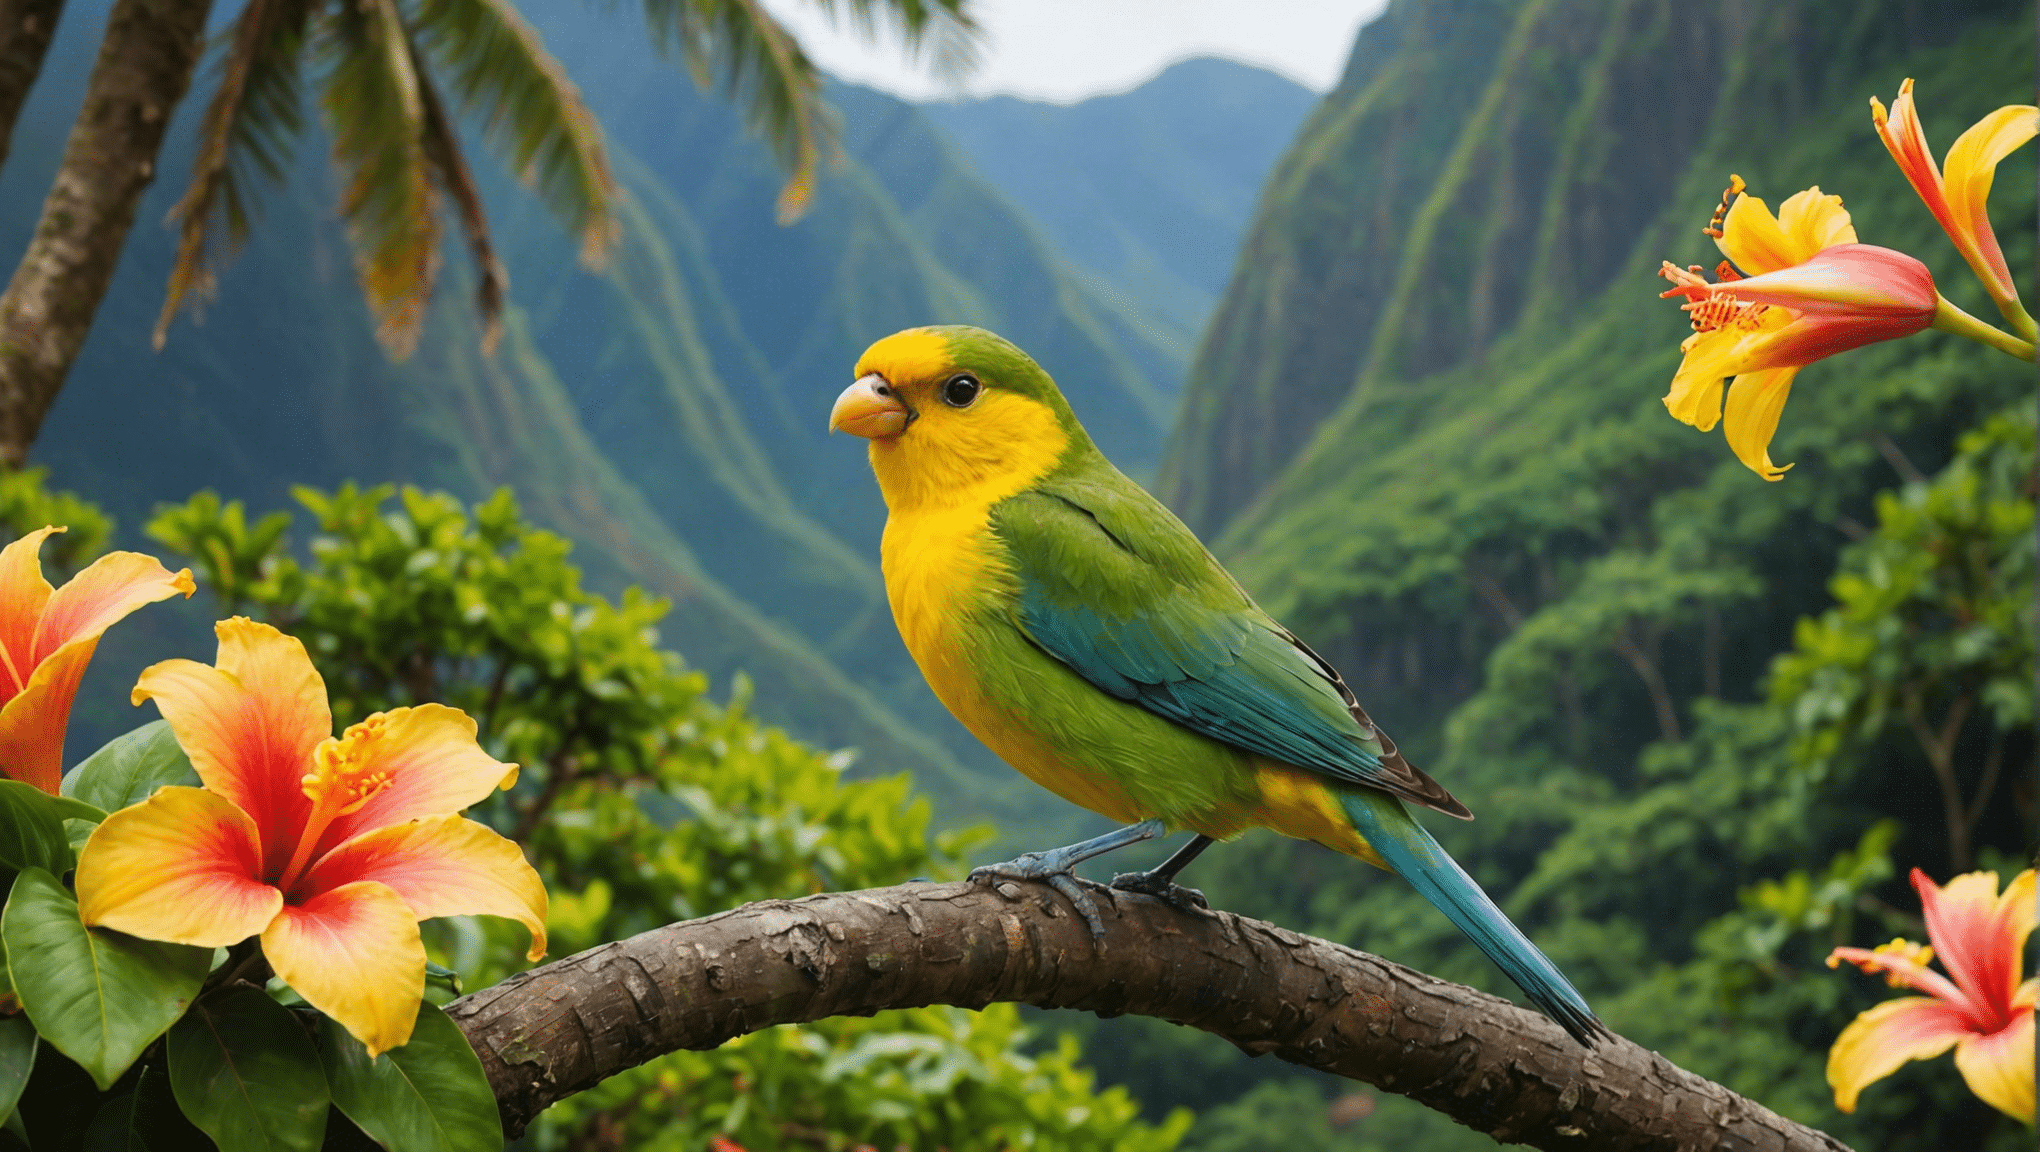 odkryj charakterystyczne gatunki ptaków Hawajów i ich fascynujące cechy. poznaj wyjątkową ptasią faunę tej rajskiej wyspy.